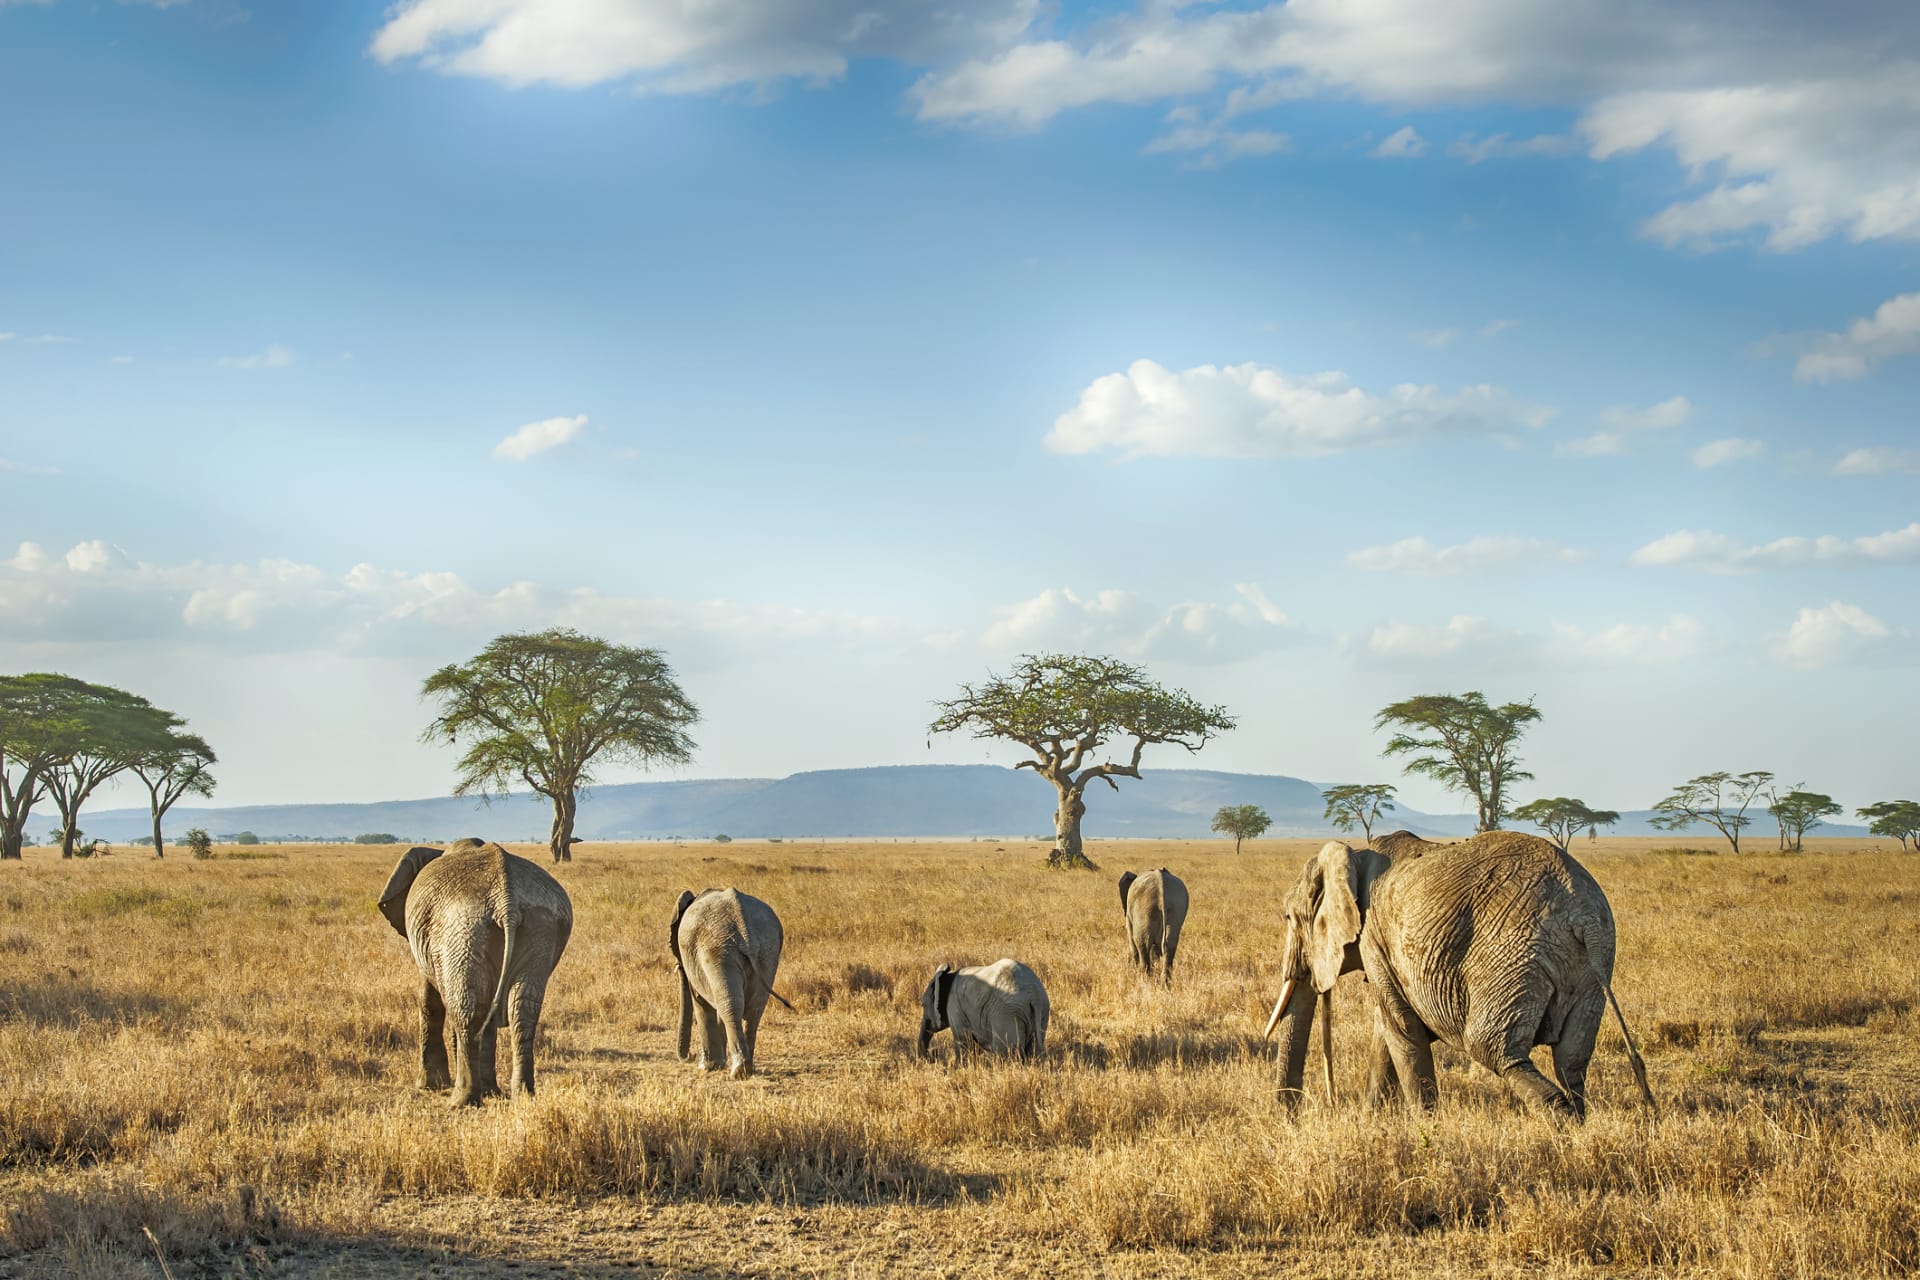 Akácie a sloni: jasná potravní vazba